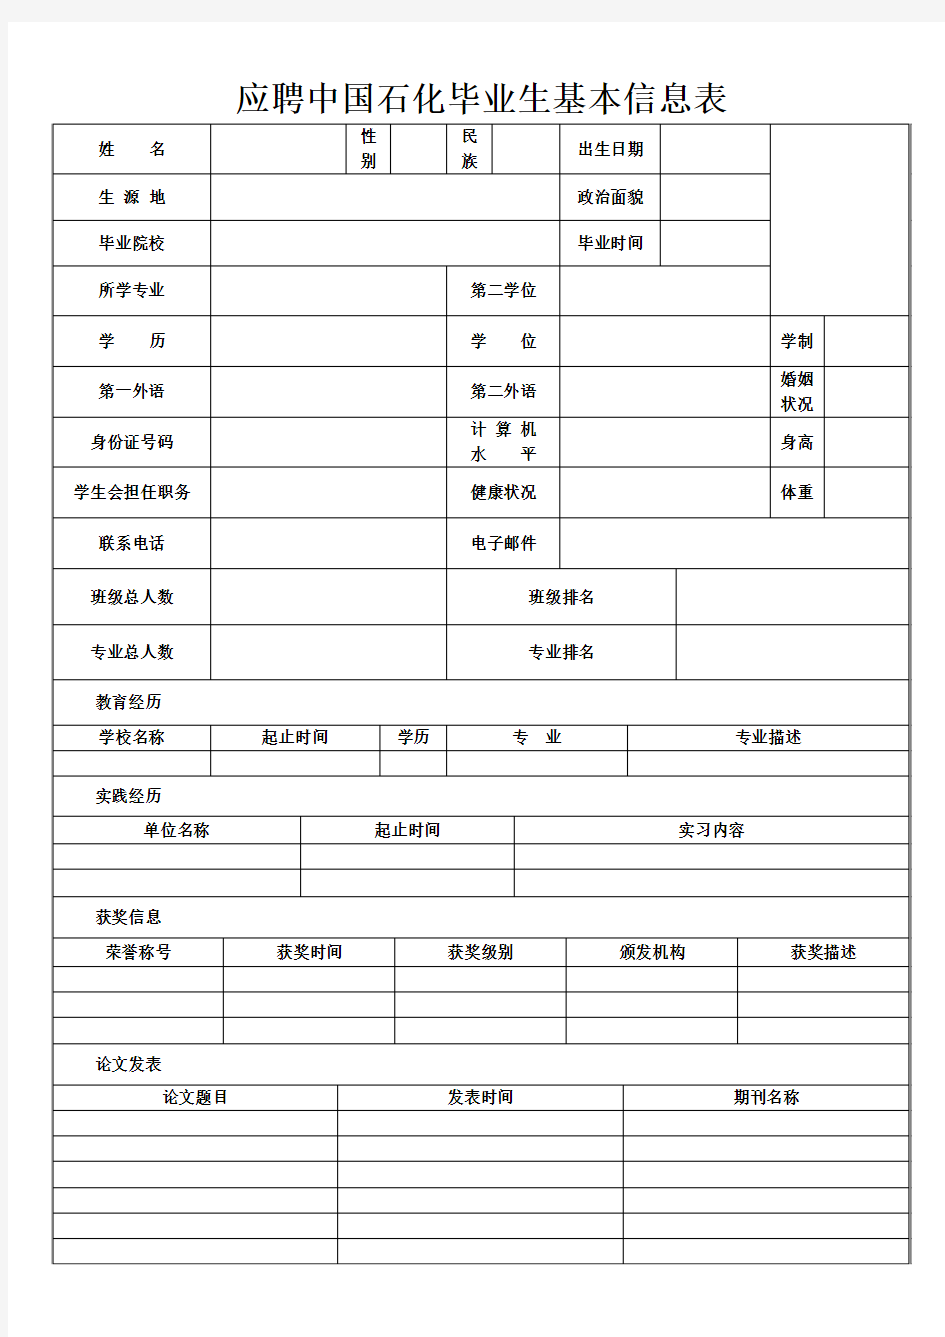 中国石化毕业生基本信息表